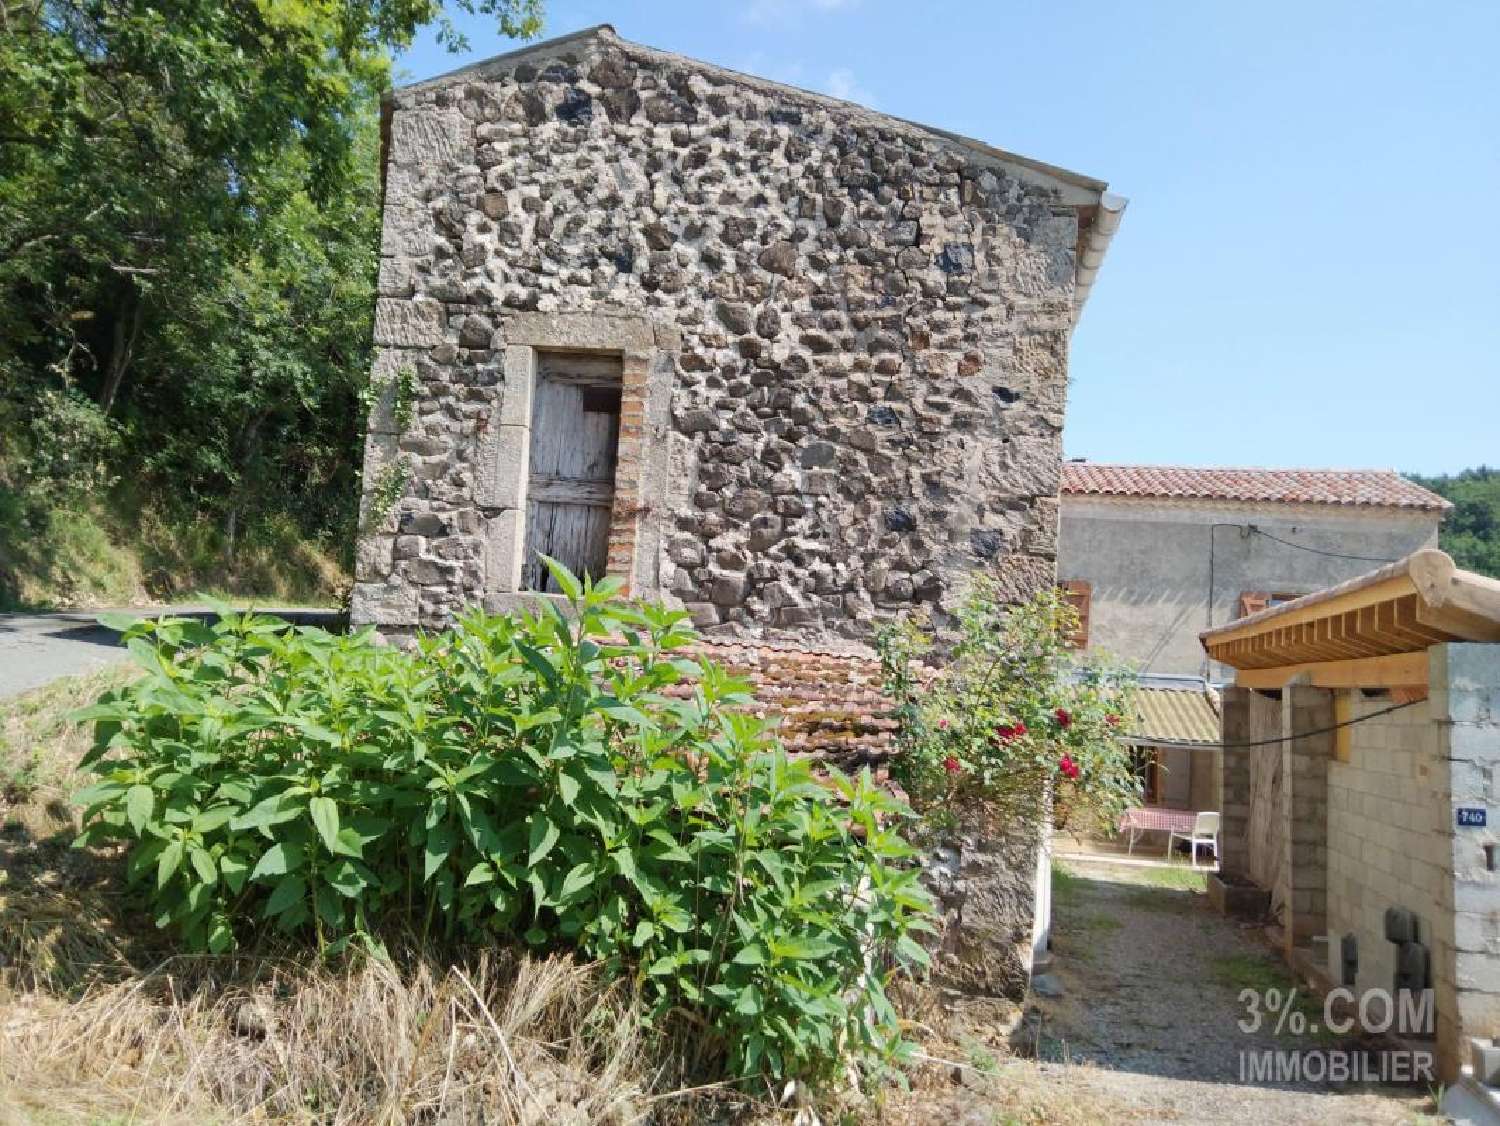  à vendre ferme Pranles Ardèche 3